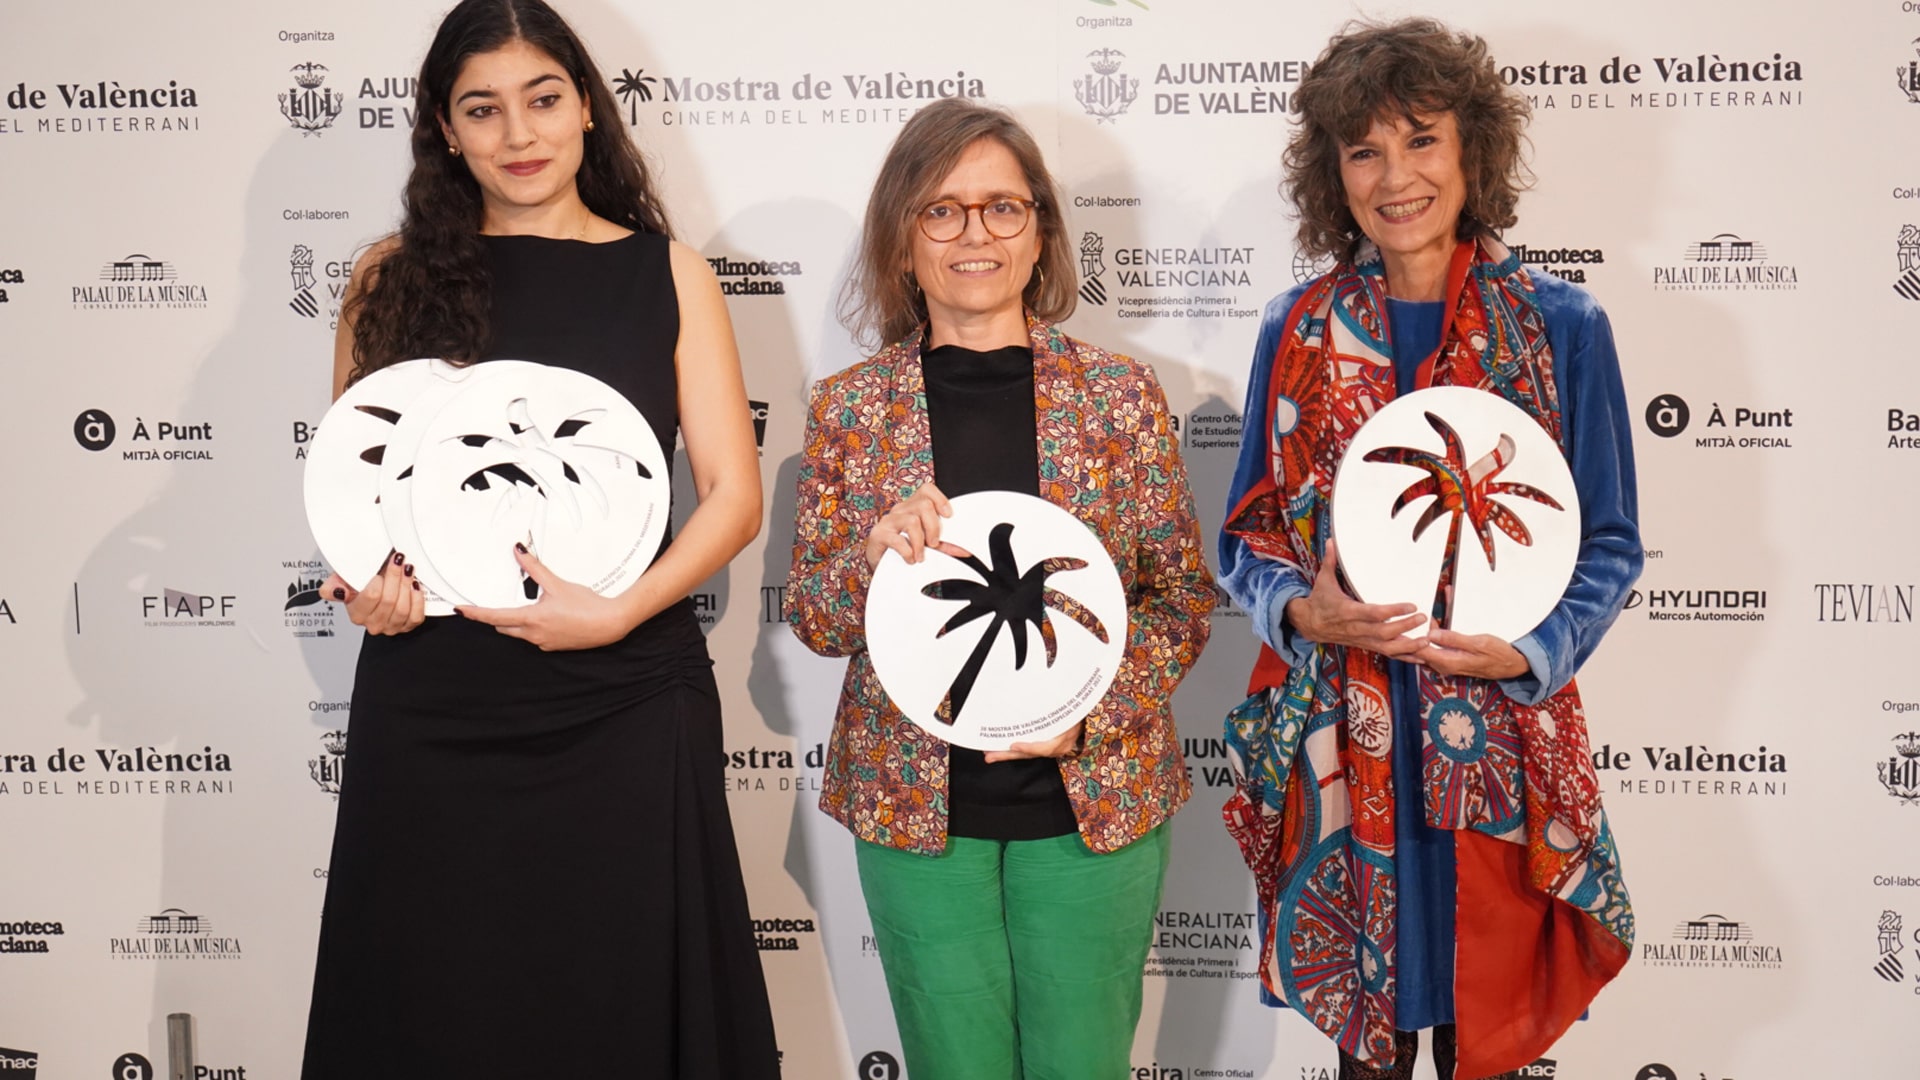 Trofeos La Mostra de València – Cinema del Mediterrani